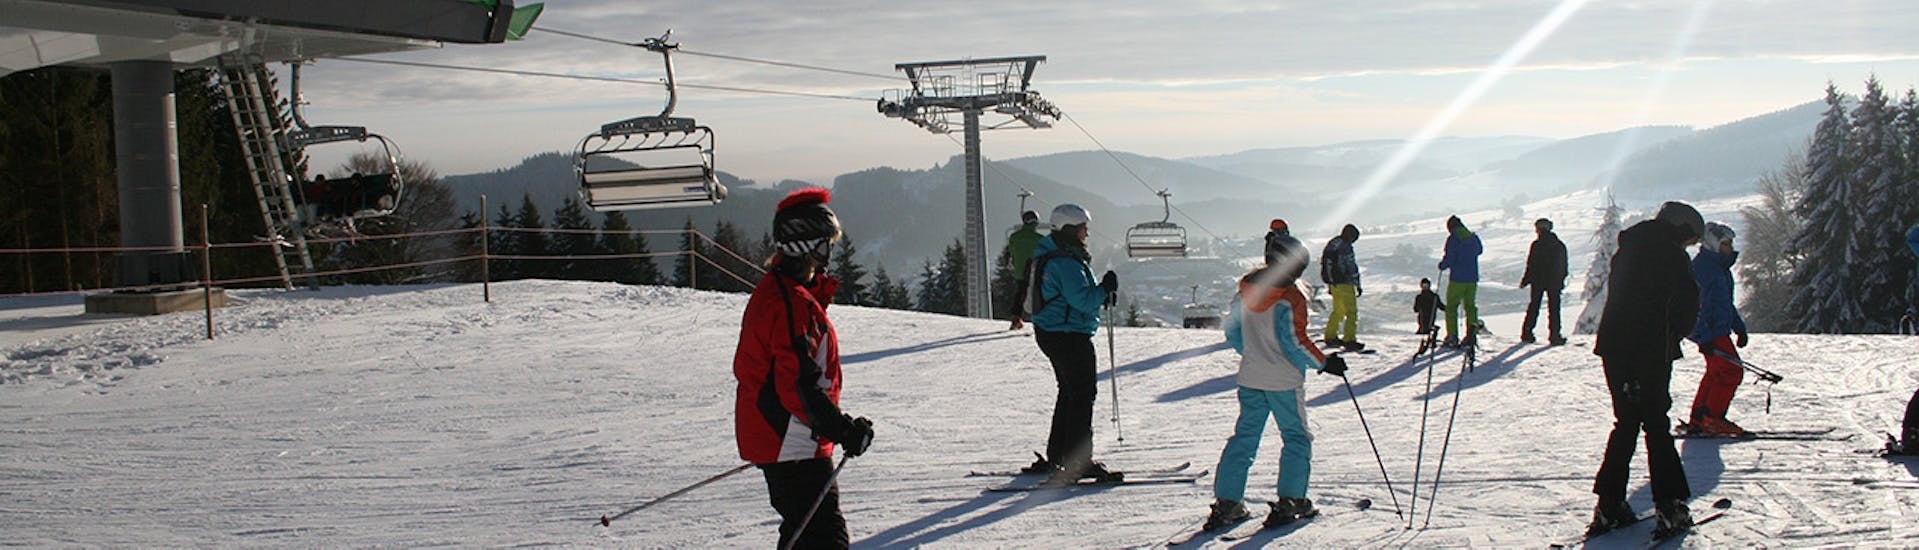 Skilessen voor tieners (11-16 j.) voor beginners.